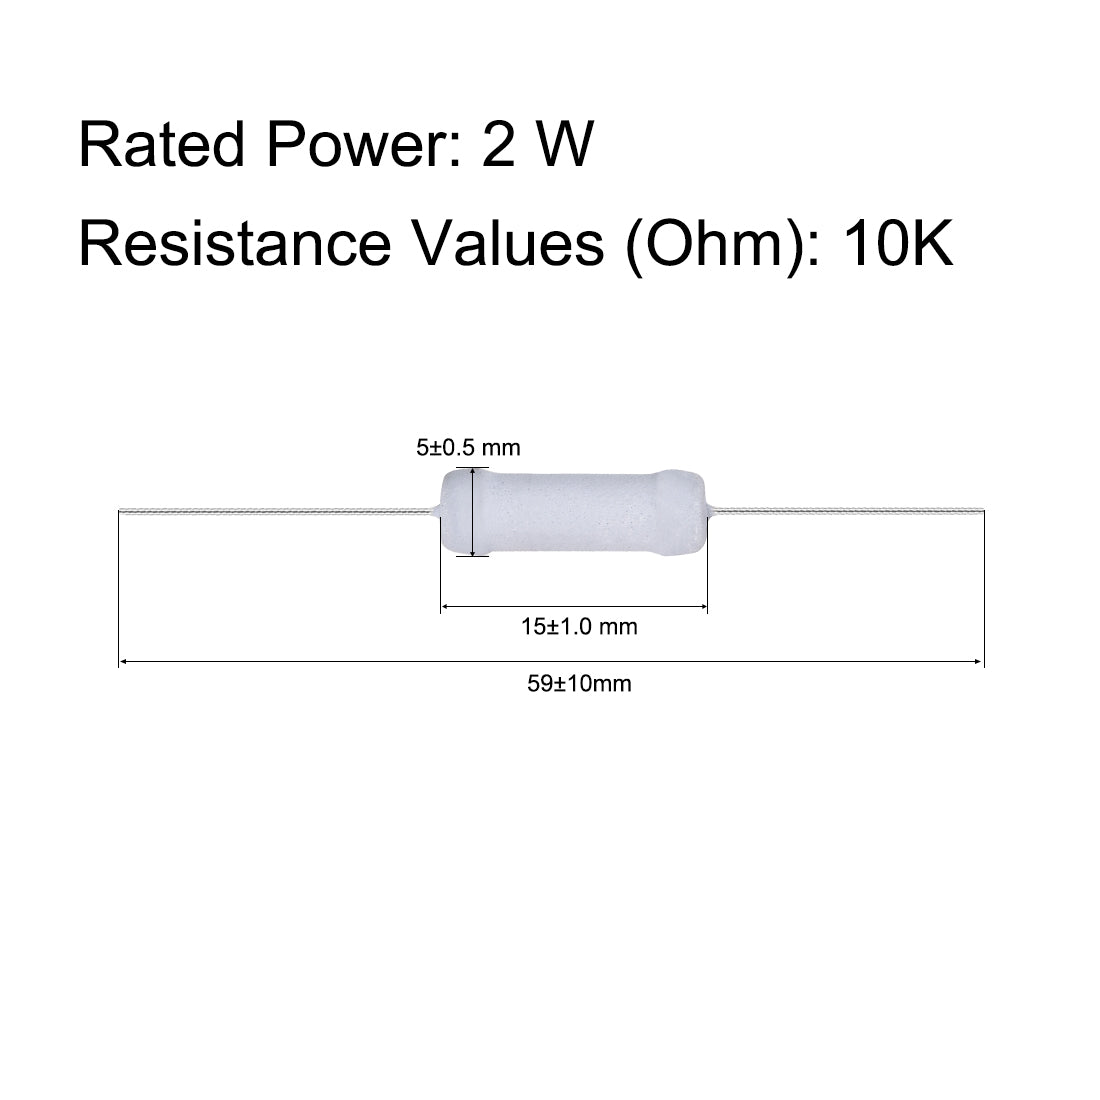 uxcell Uxcell 100pcs 2W 2 Watt Metal Oxide Film Resistor Axile Lead 10K Ohm ±5% Tolerance